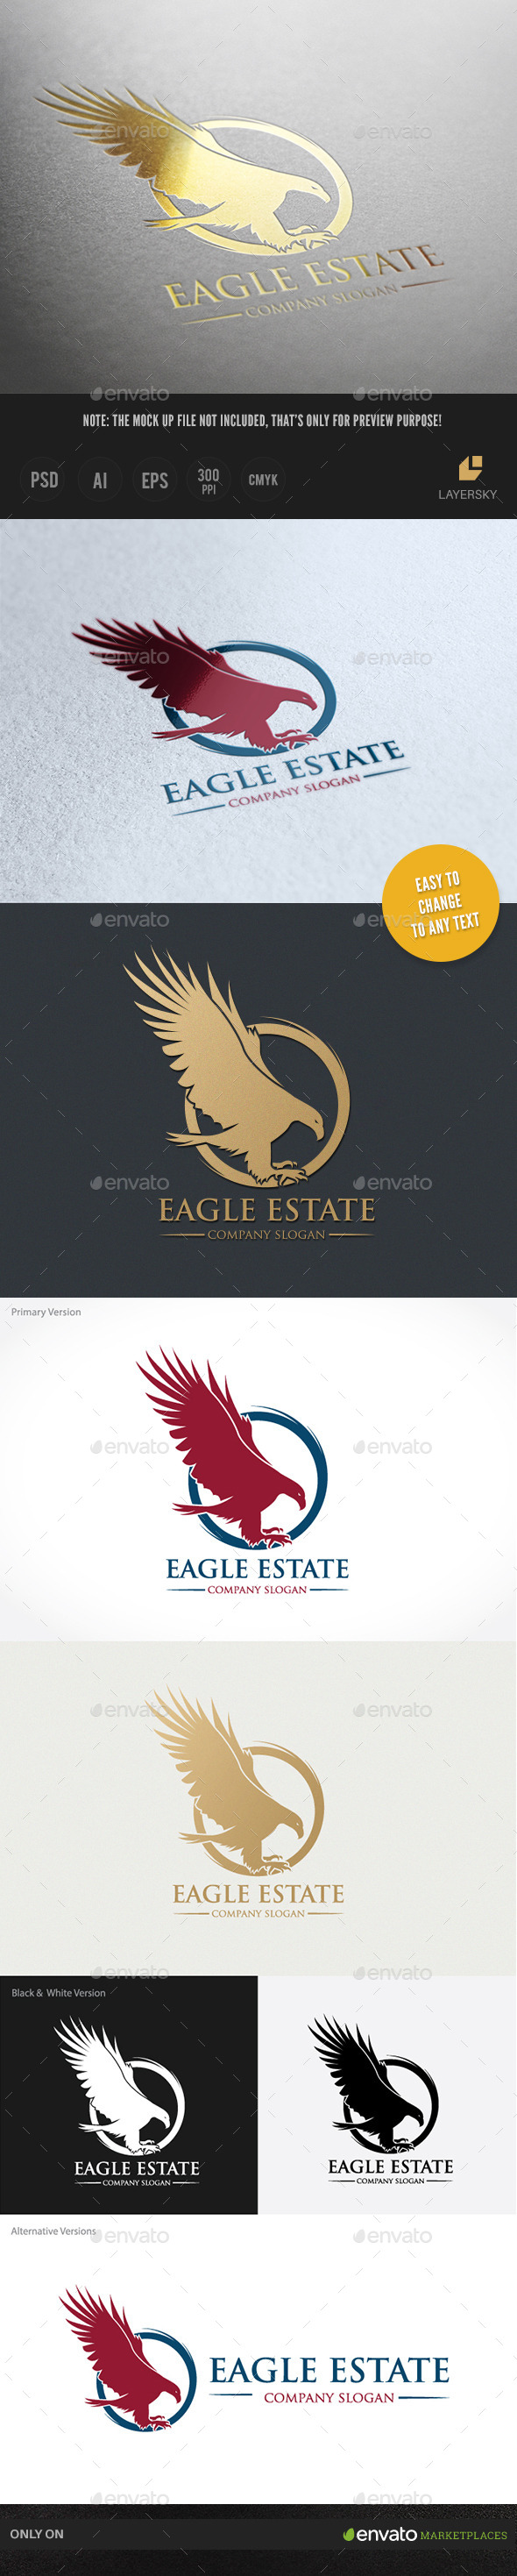 Eagle Estate